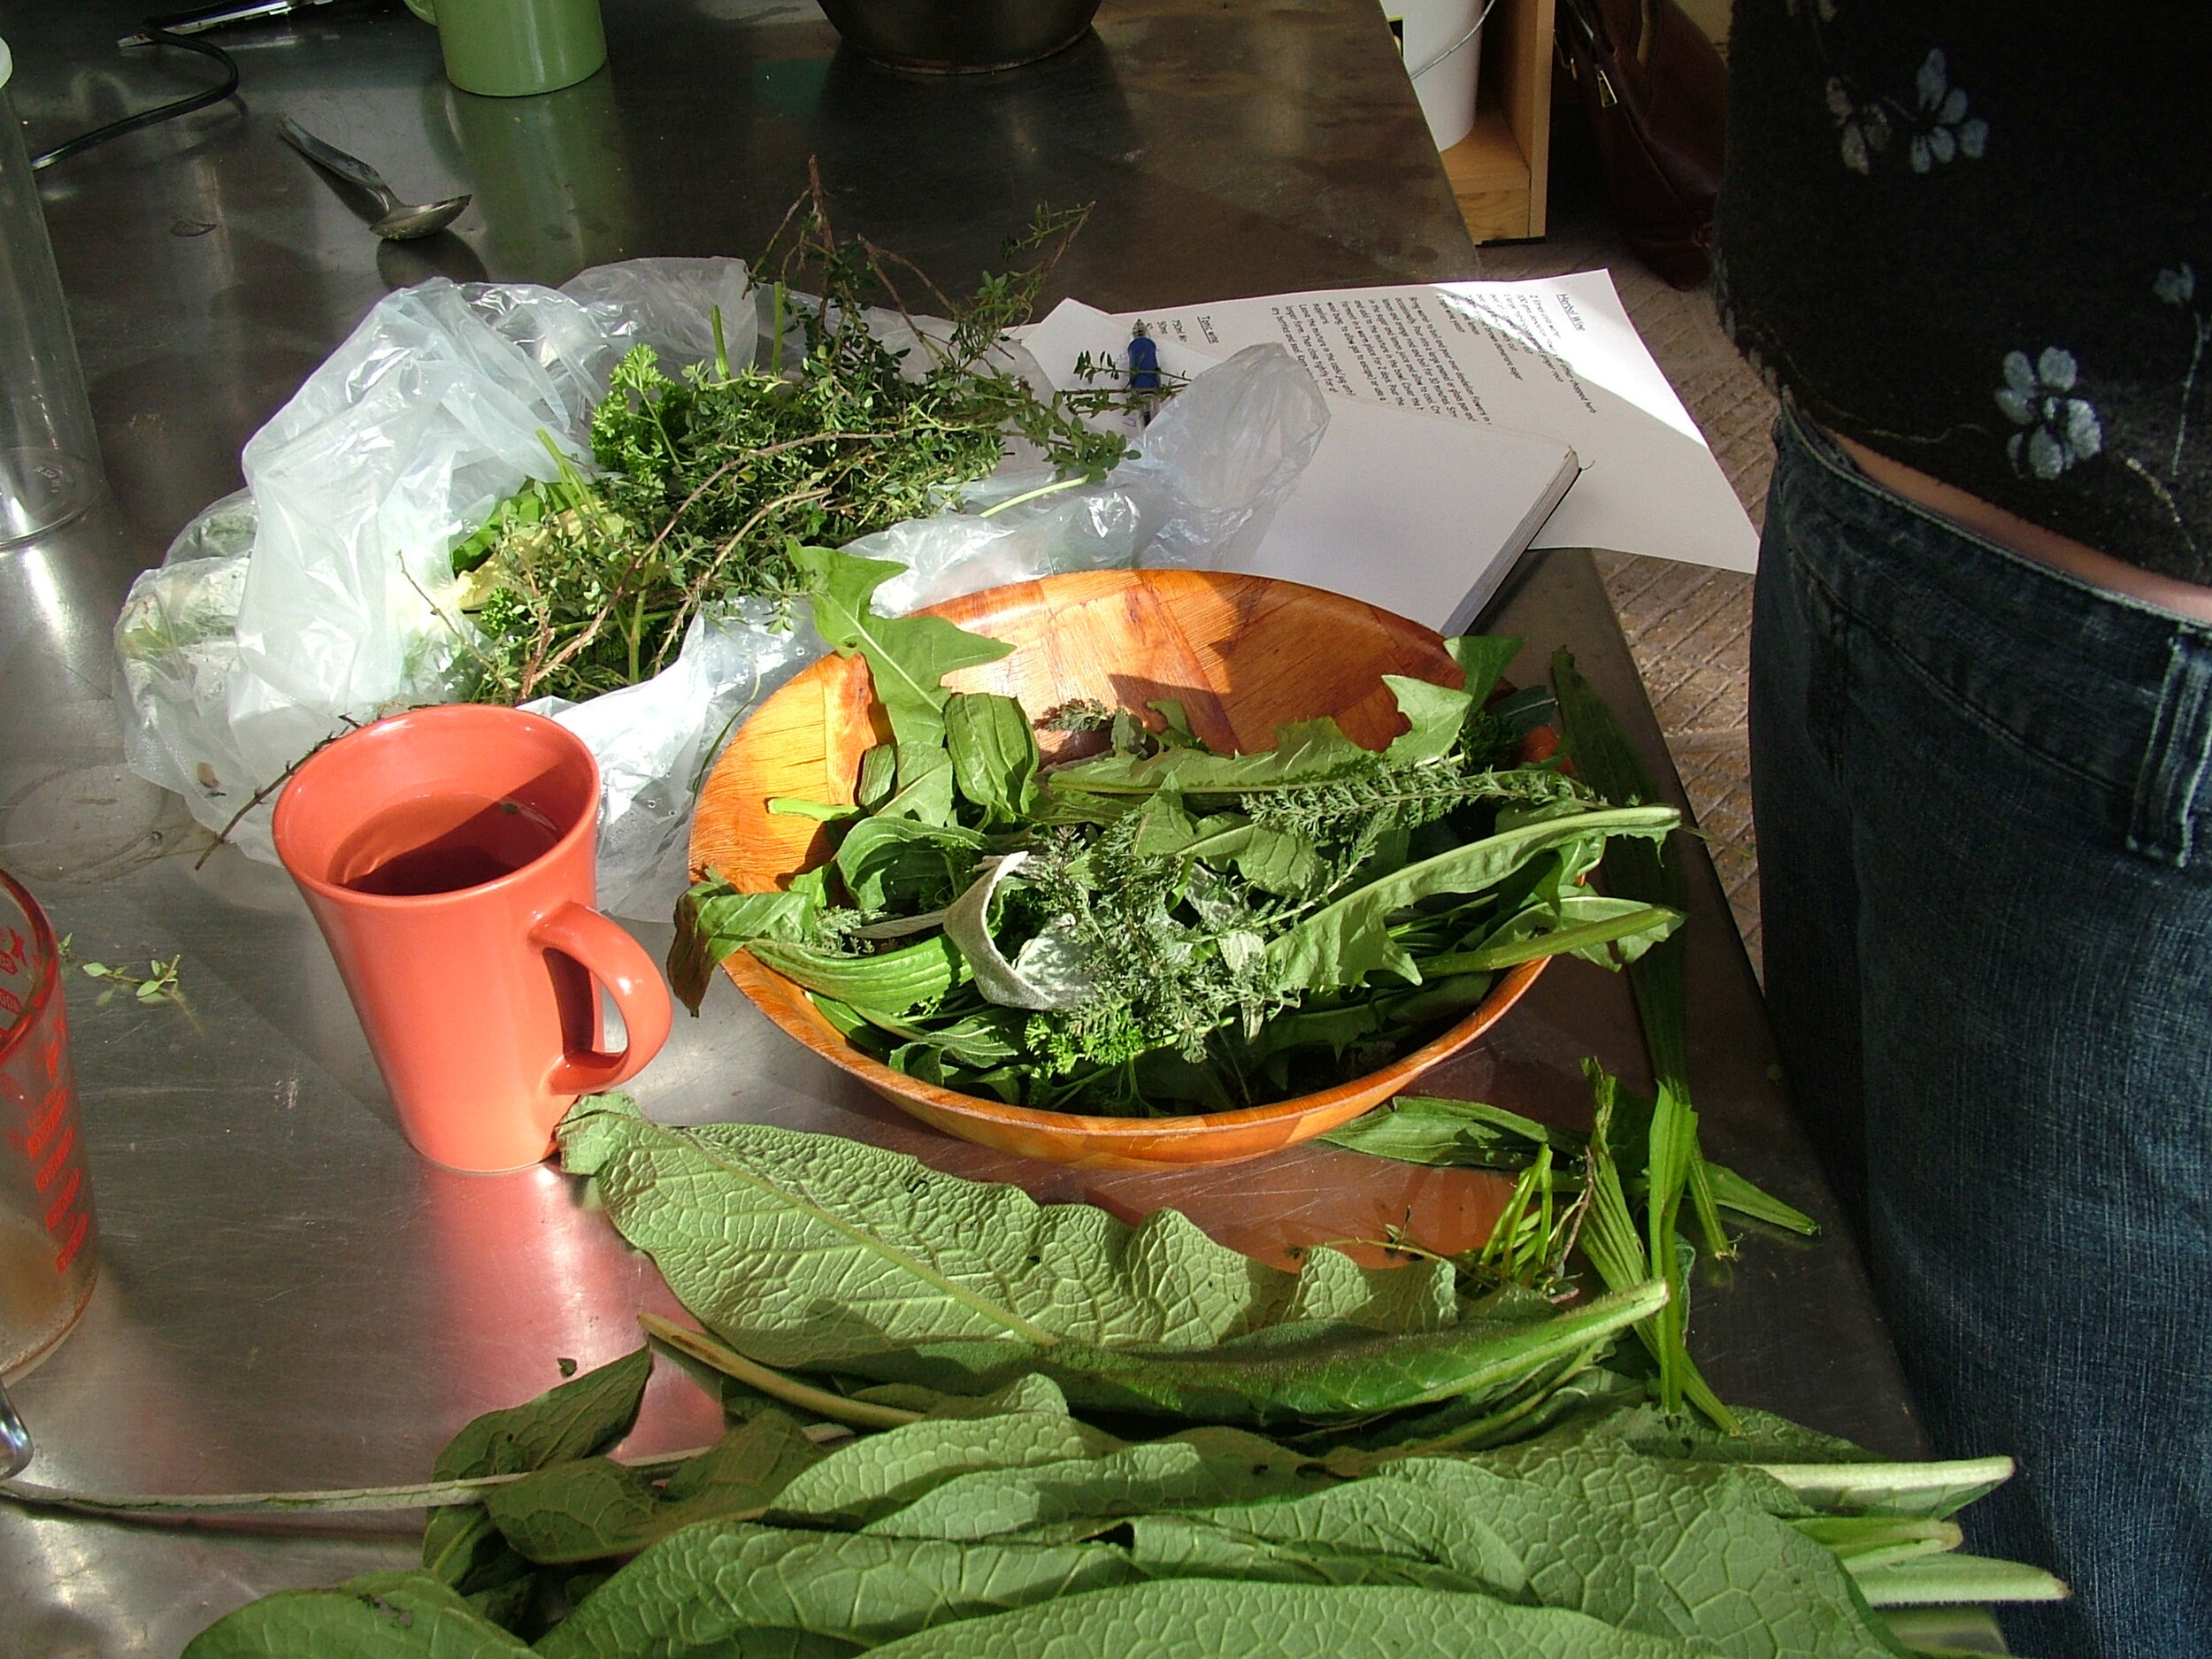  preparing herbs 